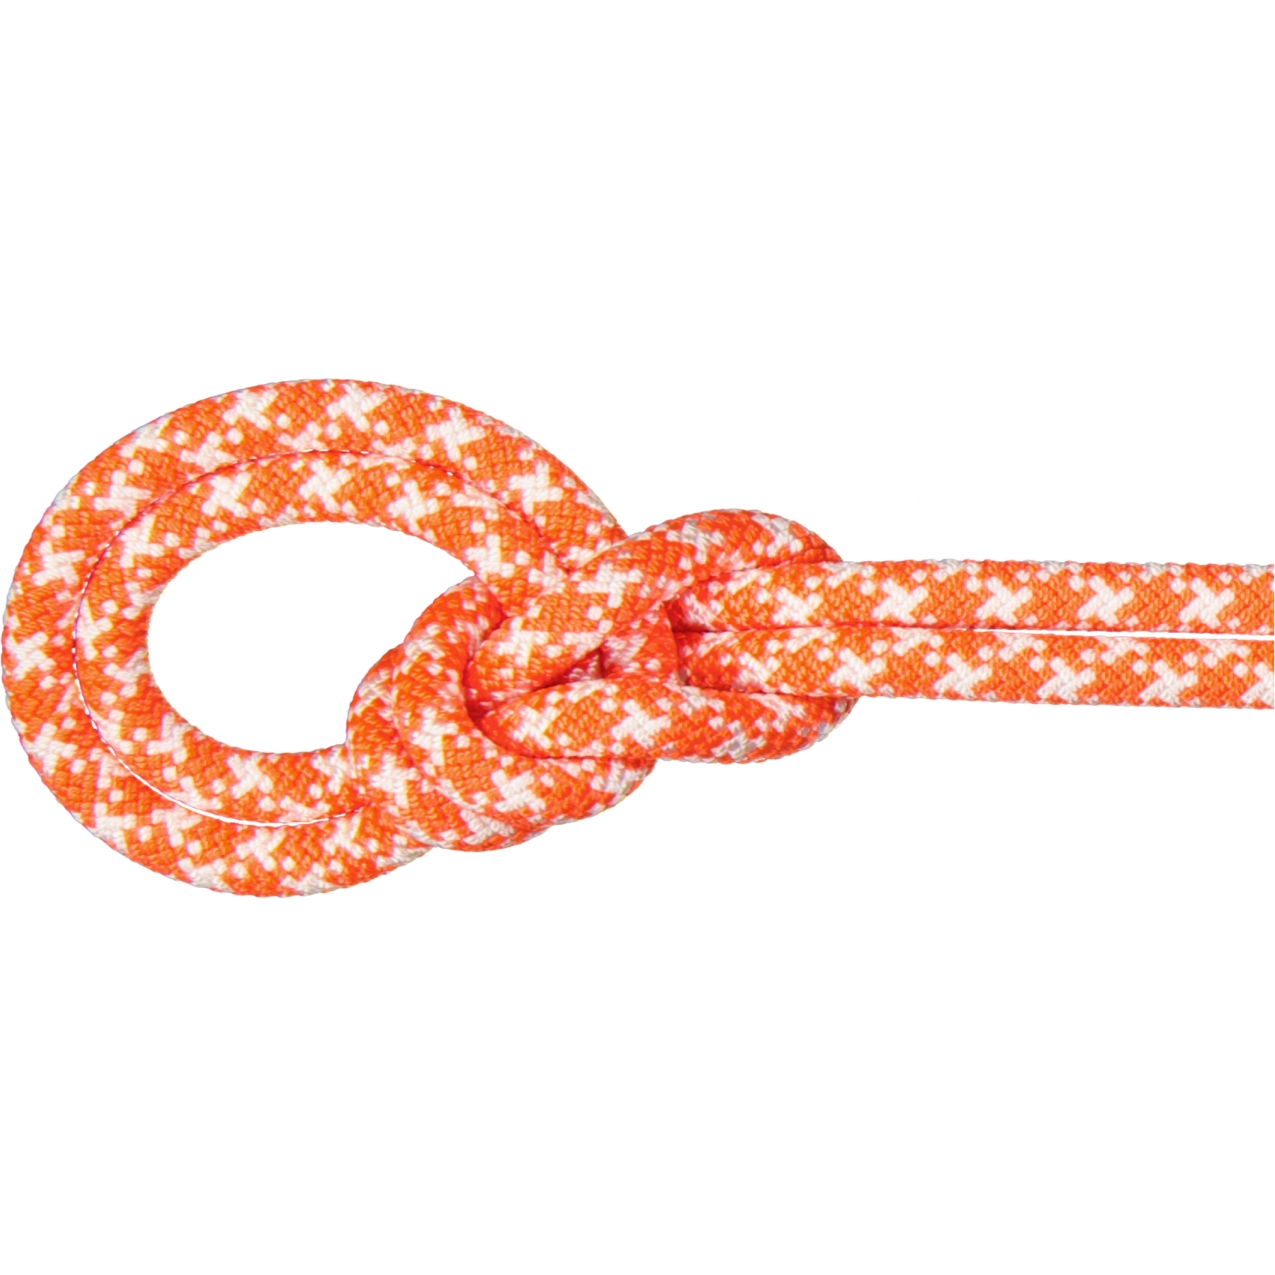 Produktbild von Mammut 9.5 Crag Classic Seil - 80m - vibrant orange-white